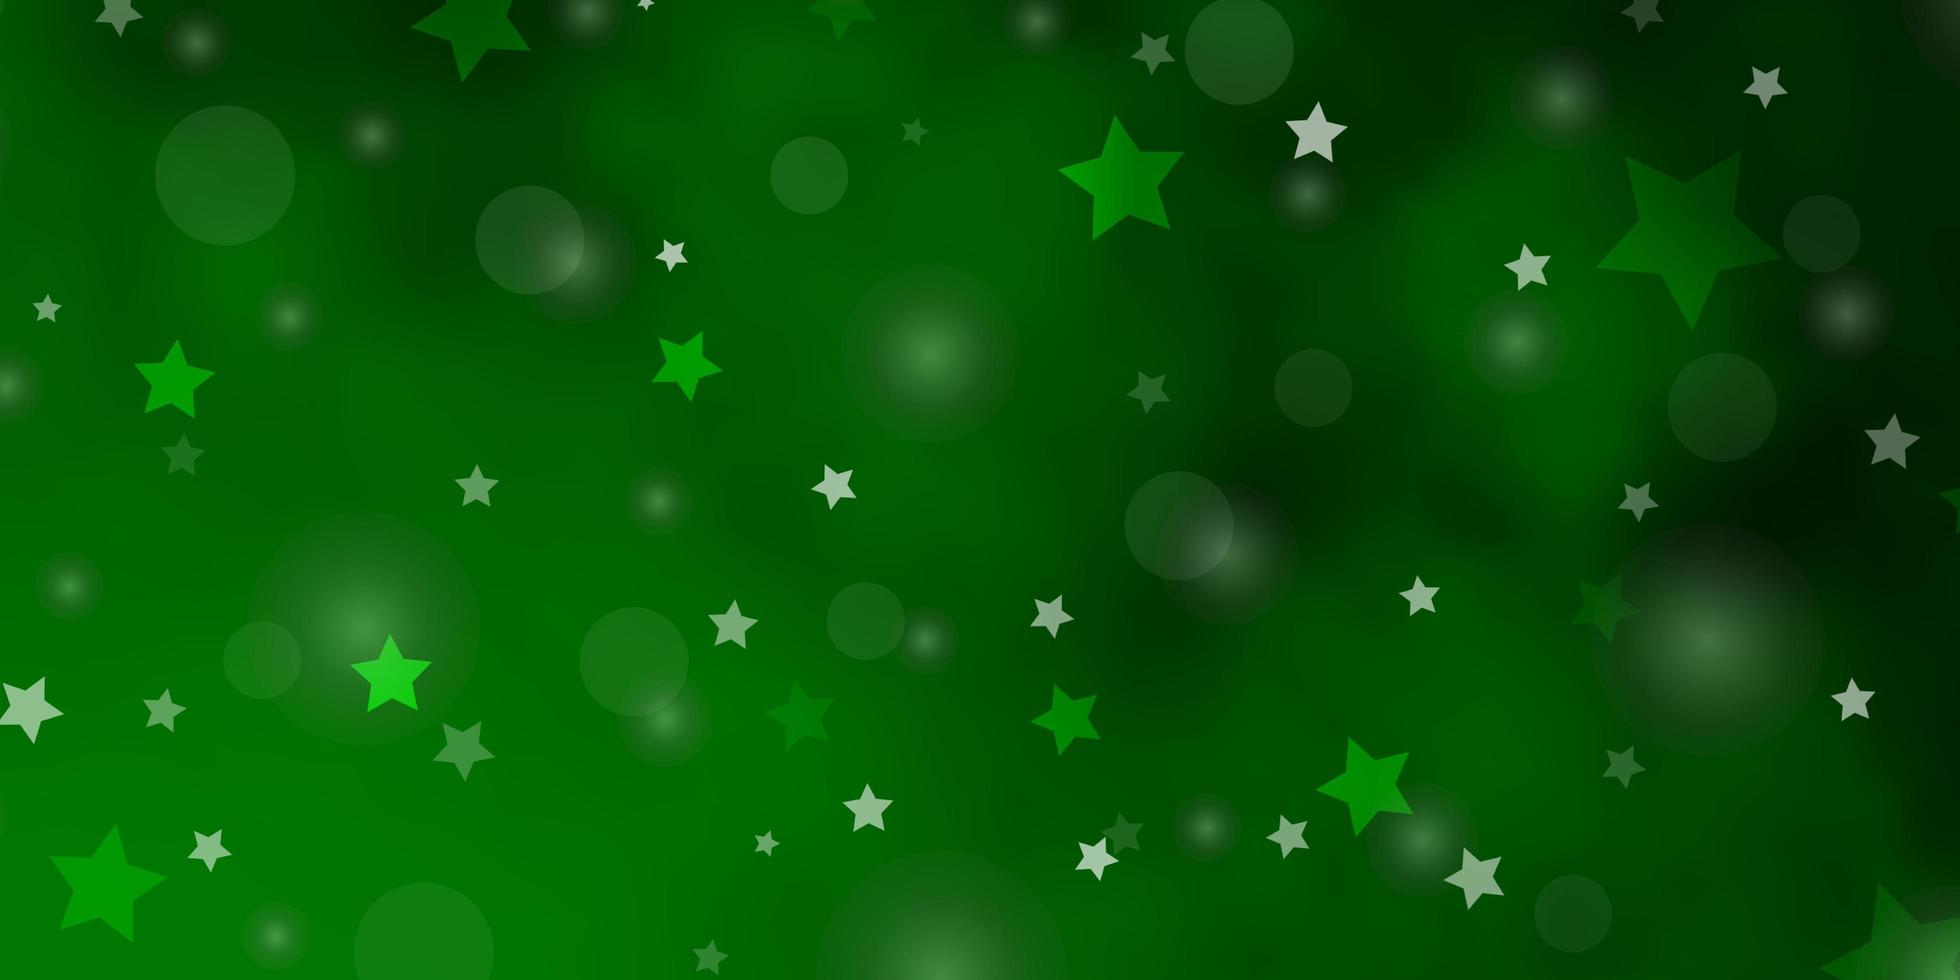 Fondo de vector verde claro con círculos estrellas diseño abstracto en estilo degradado con burbujas diseño de estrellas para fondos de pantalla de tela textil